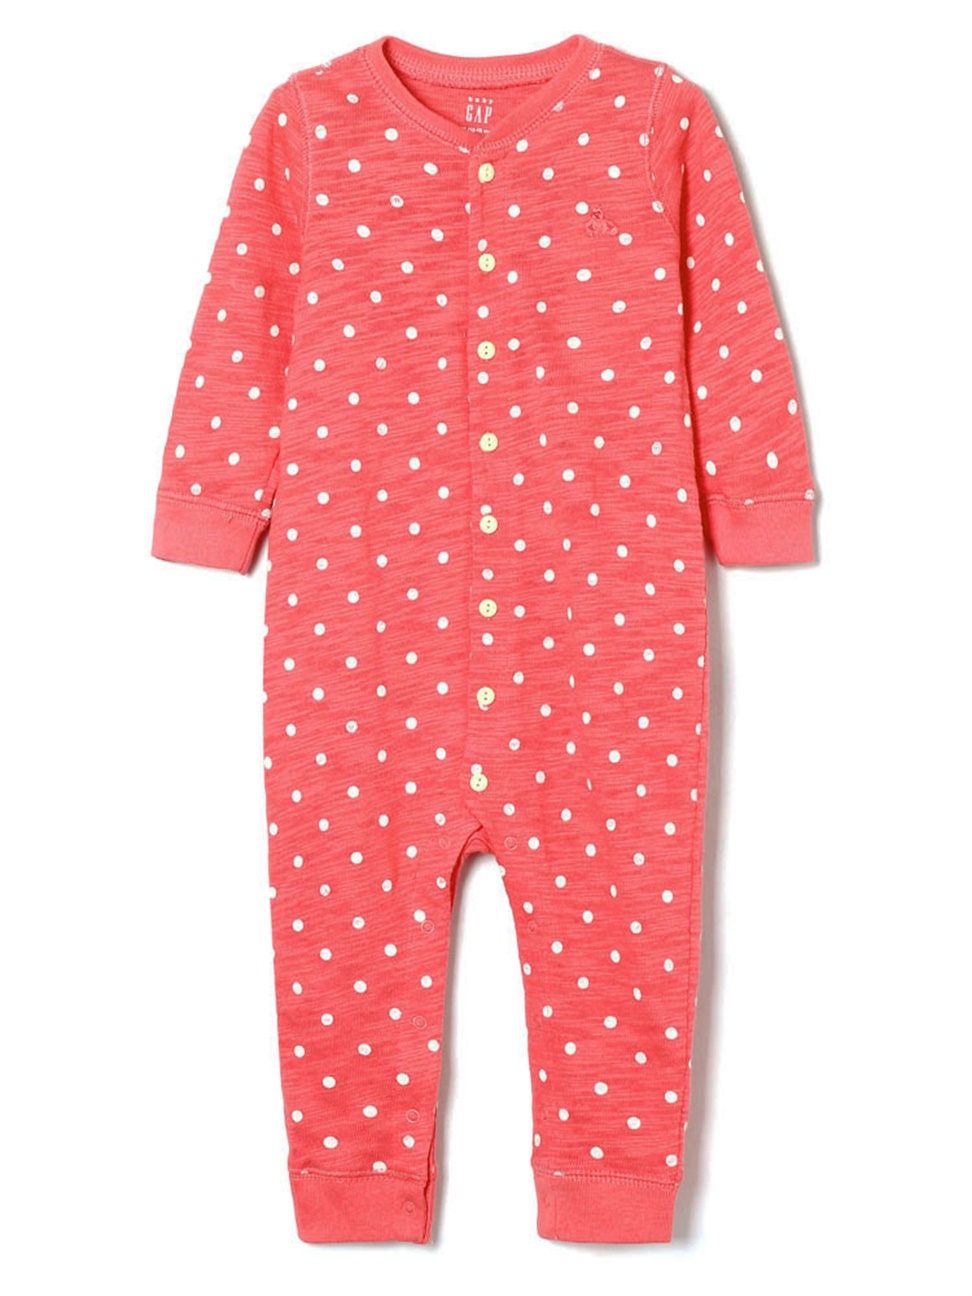 嬰兒裝|舒適柔軟長袖包屁衣-橙粉色